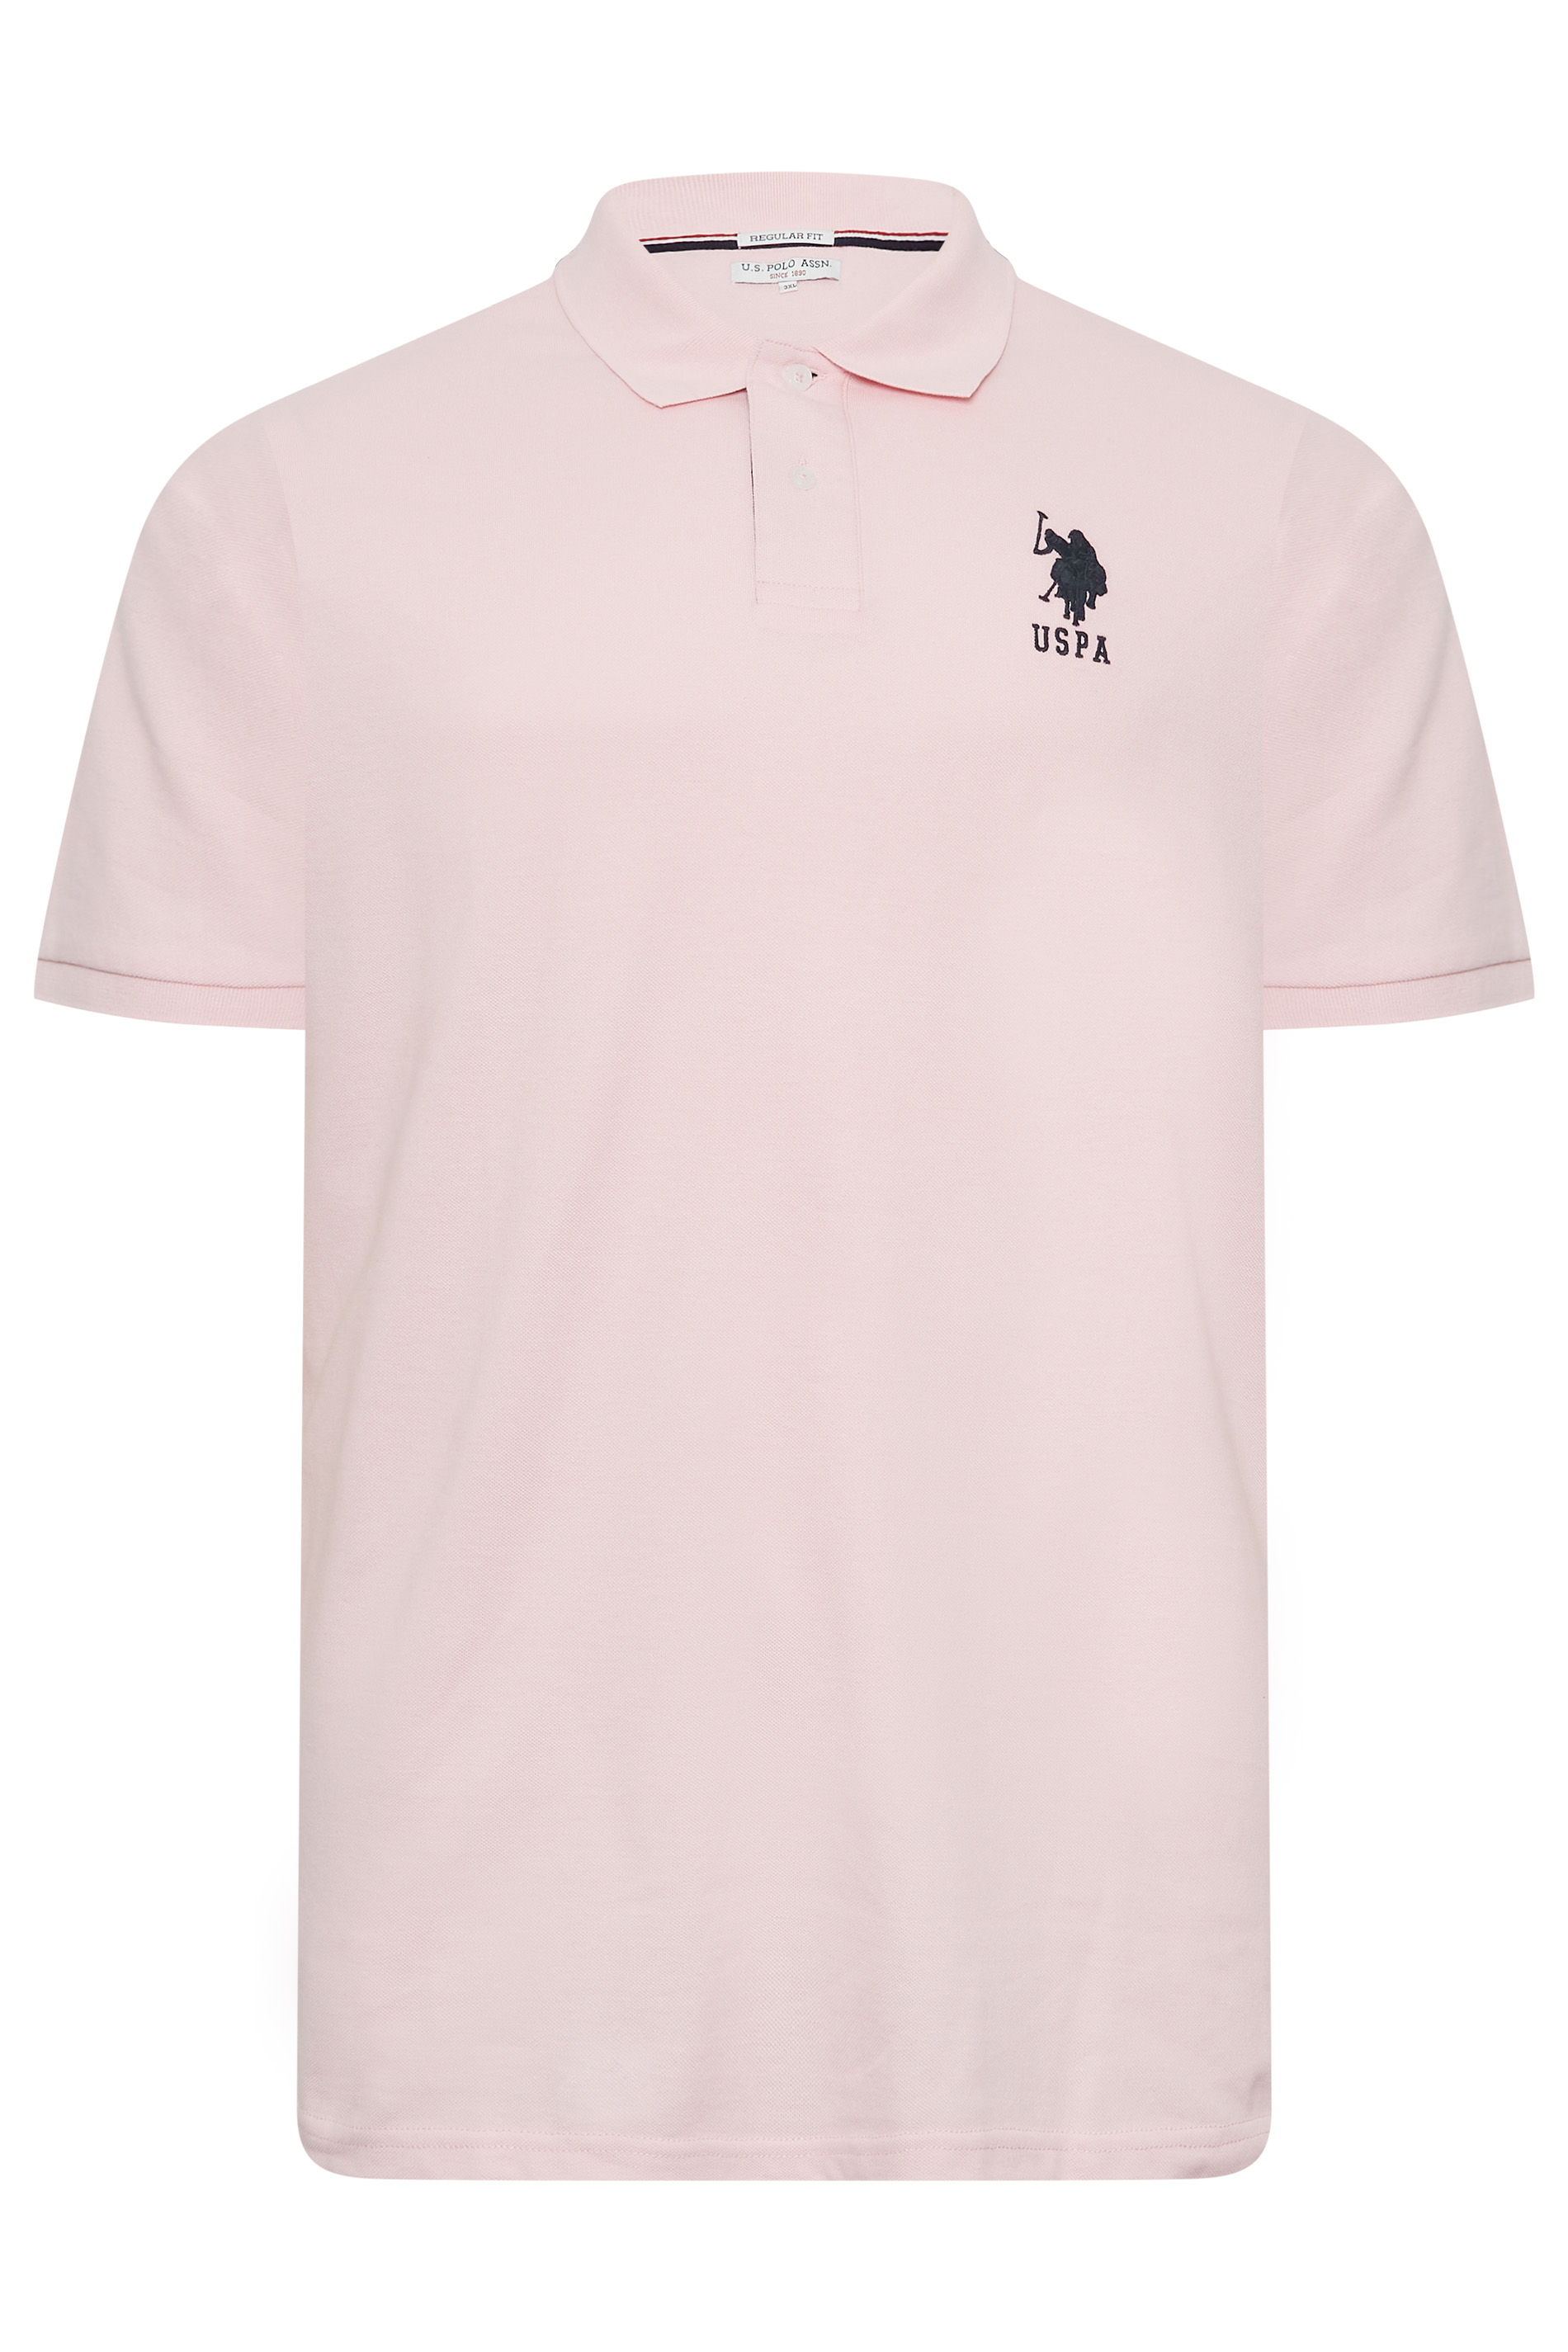 U.S. POLO ASSN. Big & Tall Pink Player 3 Polo Shirt | BadRhino 3